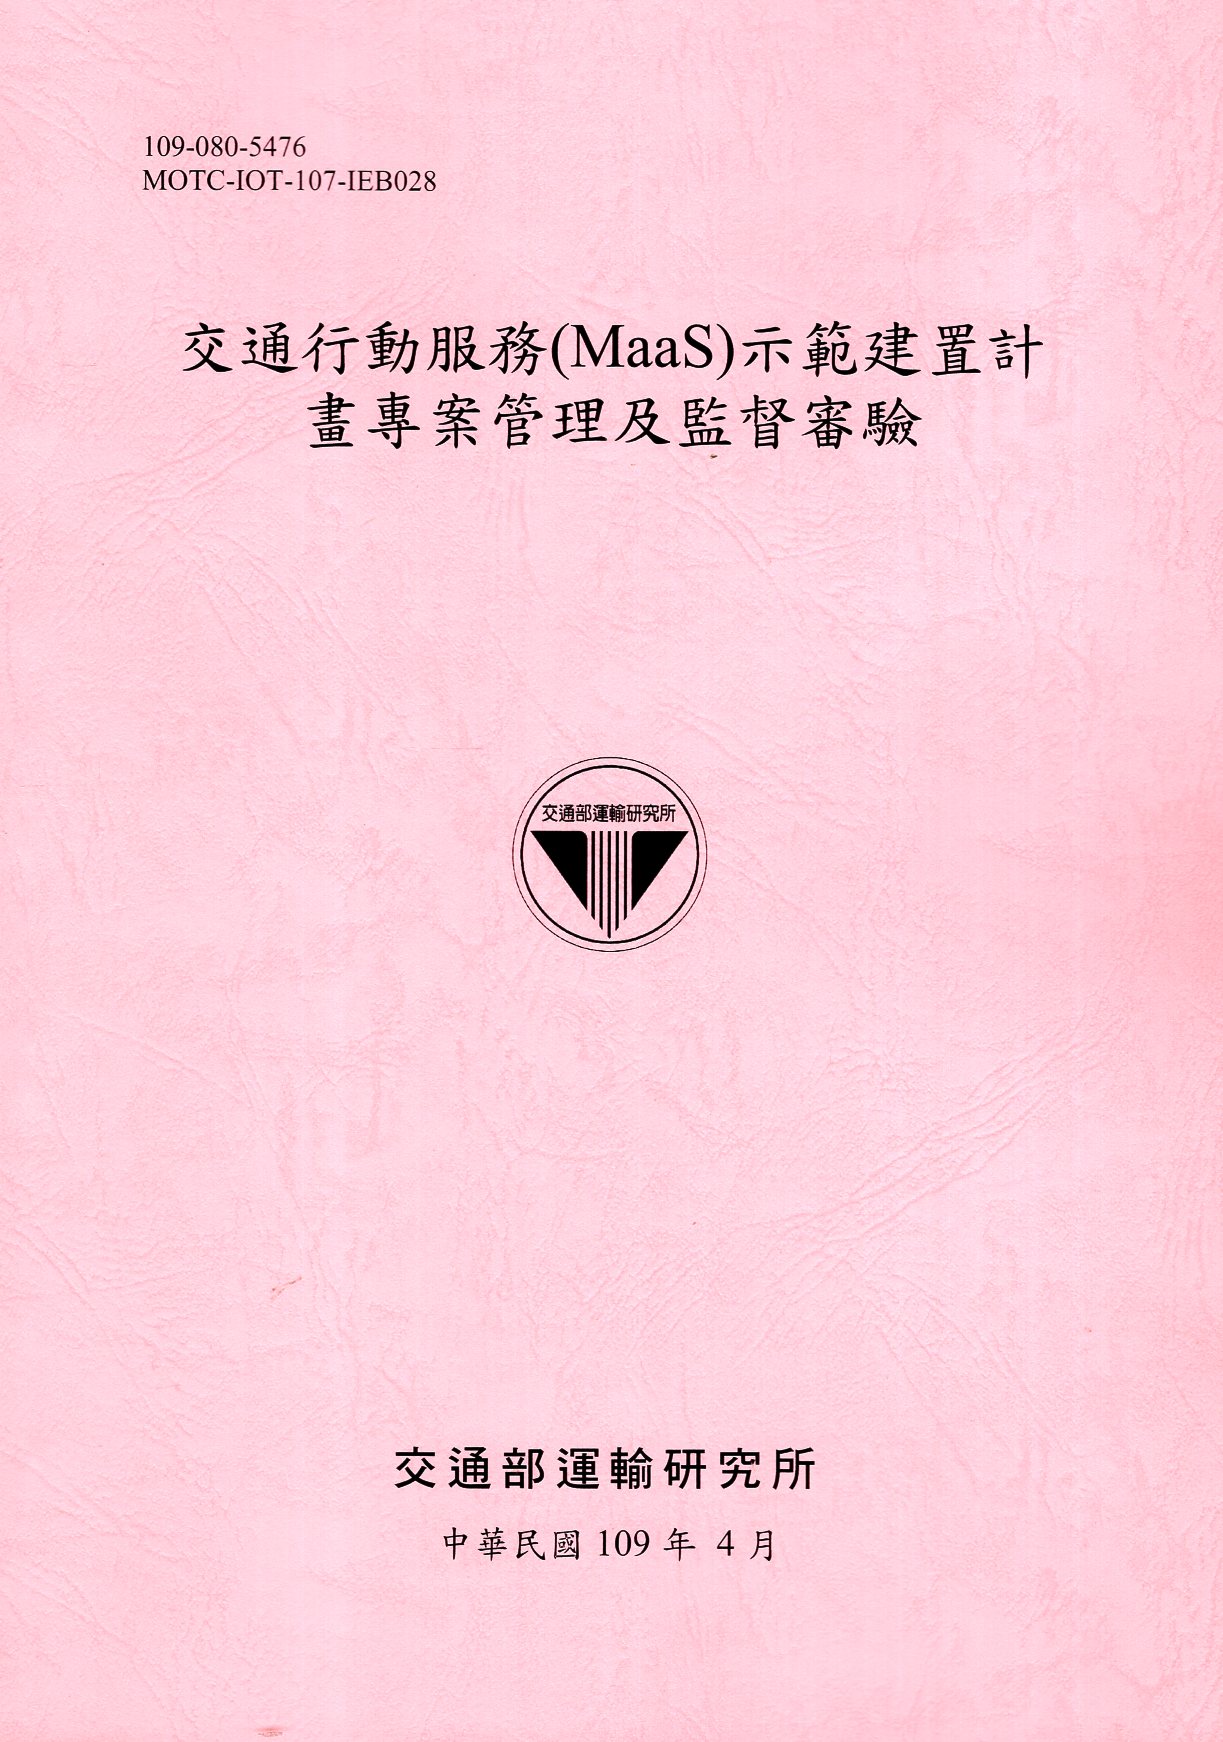 交通行動服務（MaaS）示範建置計畫專案管理及監督審驗